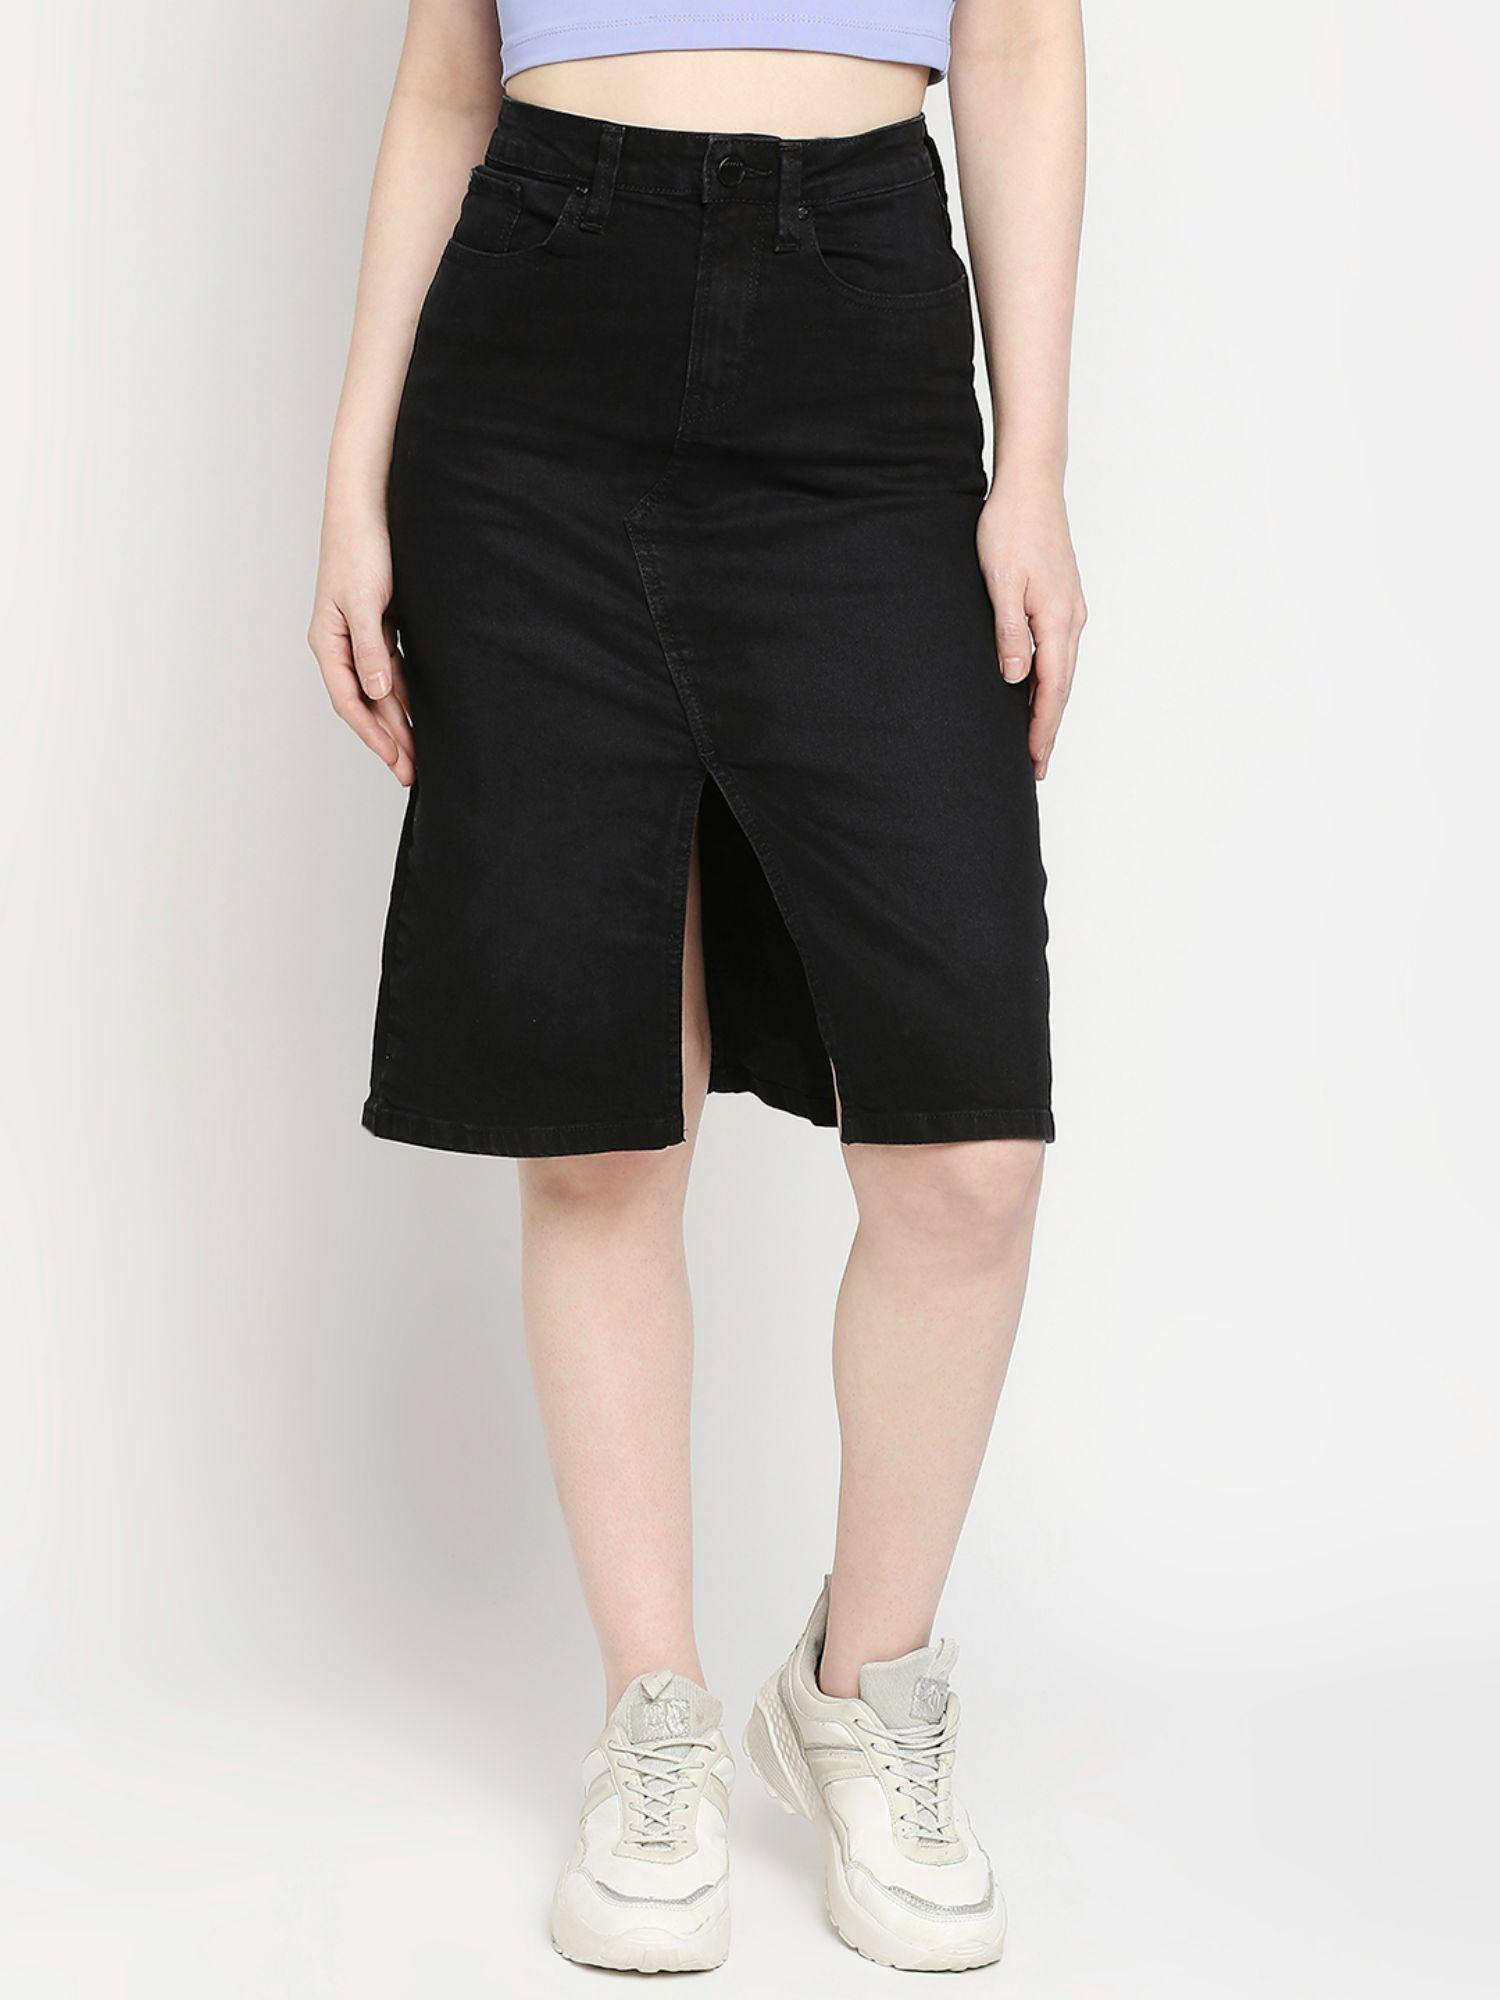 black cotton straight fit regular length skirt for women (bella)